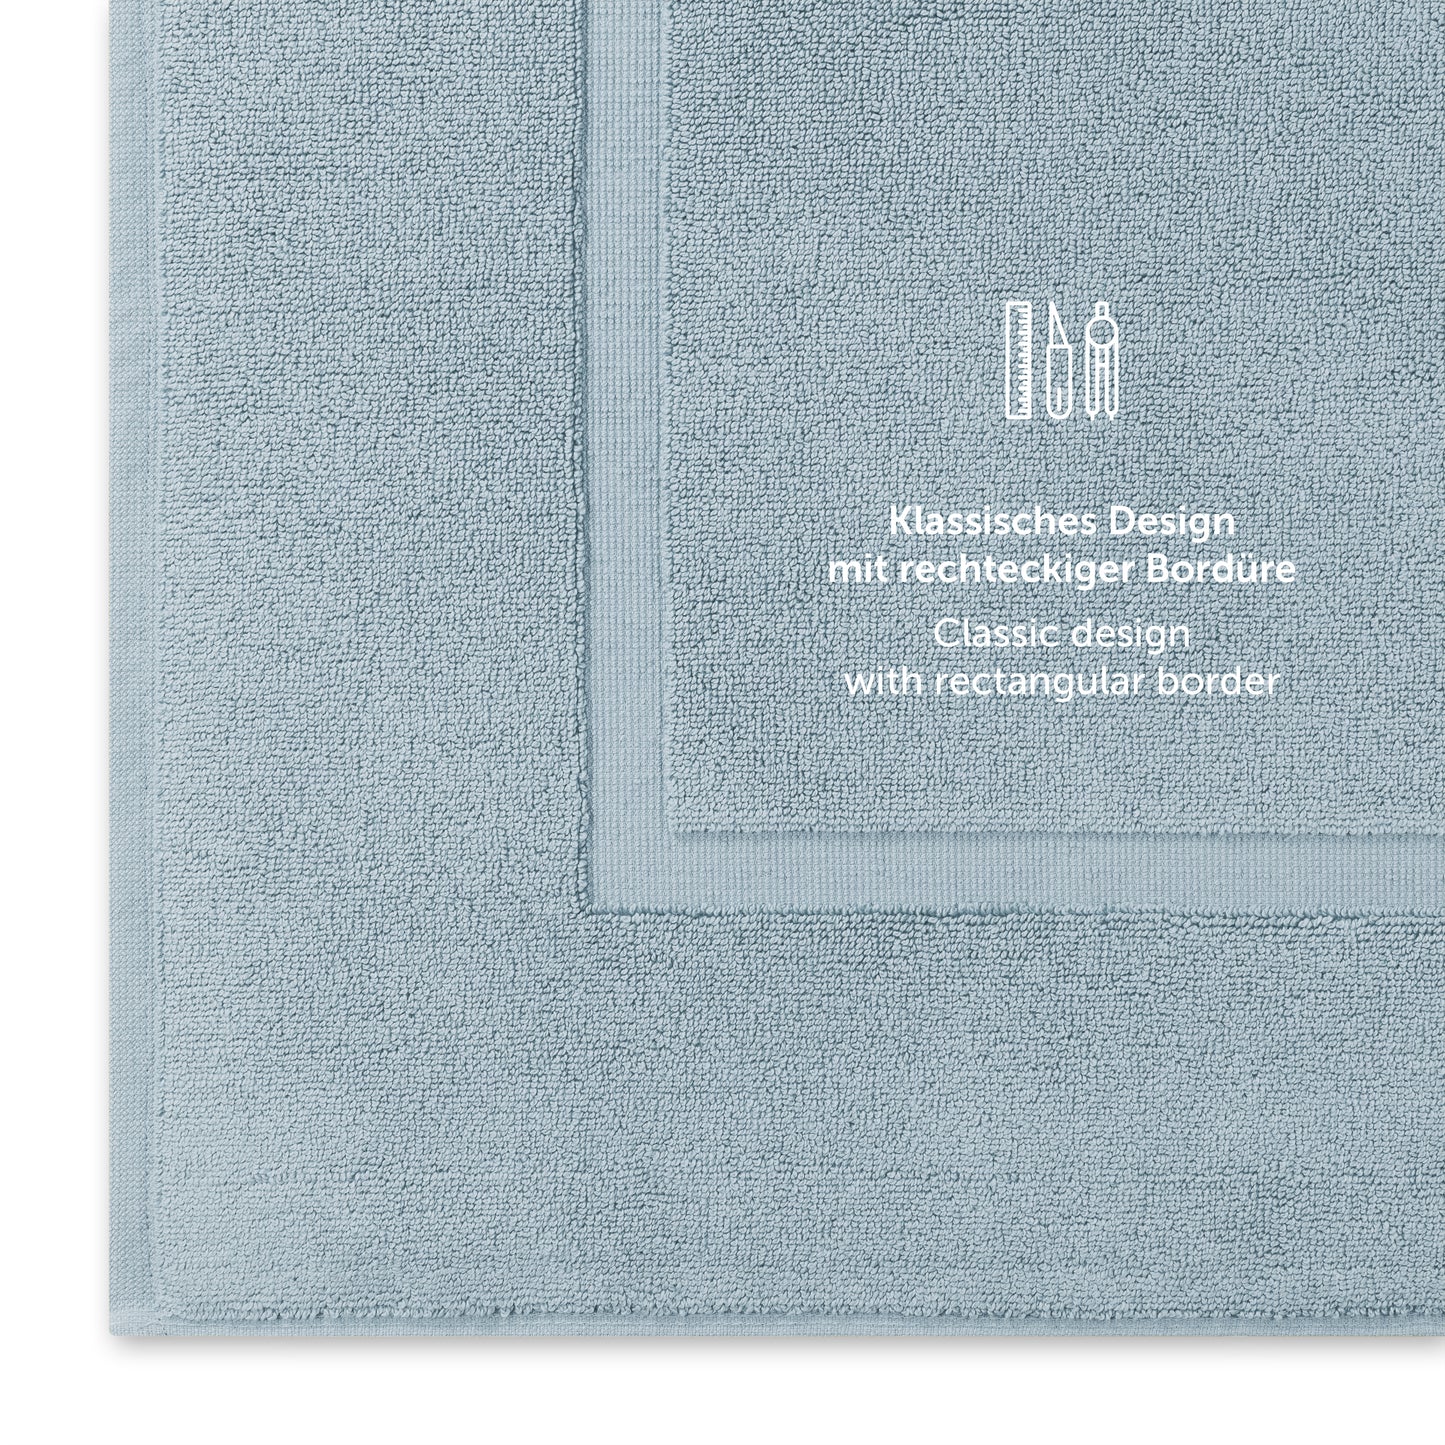 Hellblaues Handtuch mit klassischem Design und Bordürendetail.